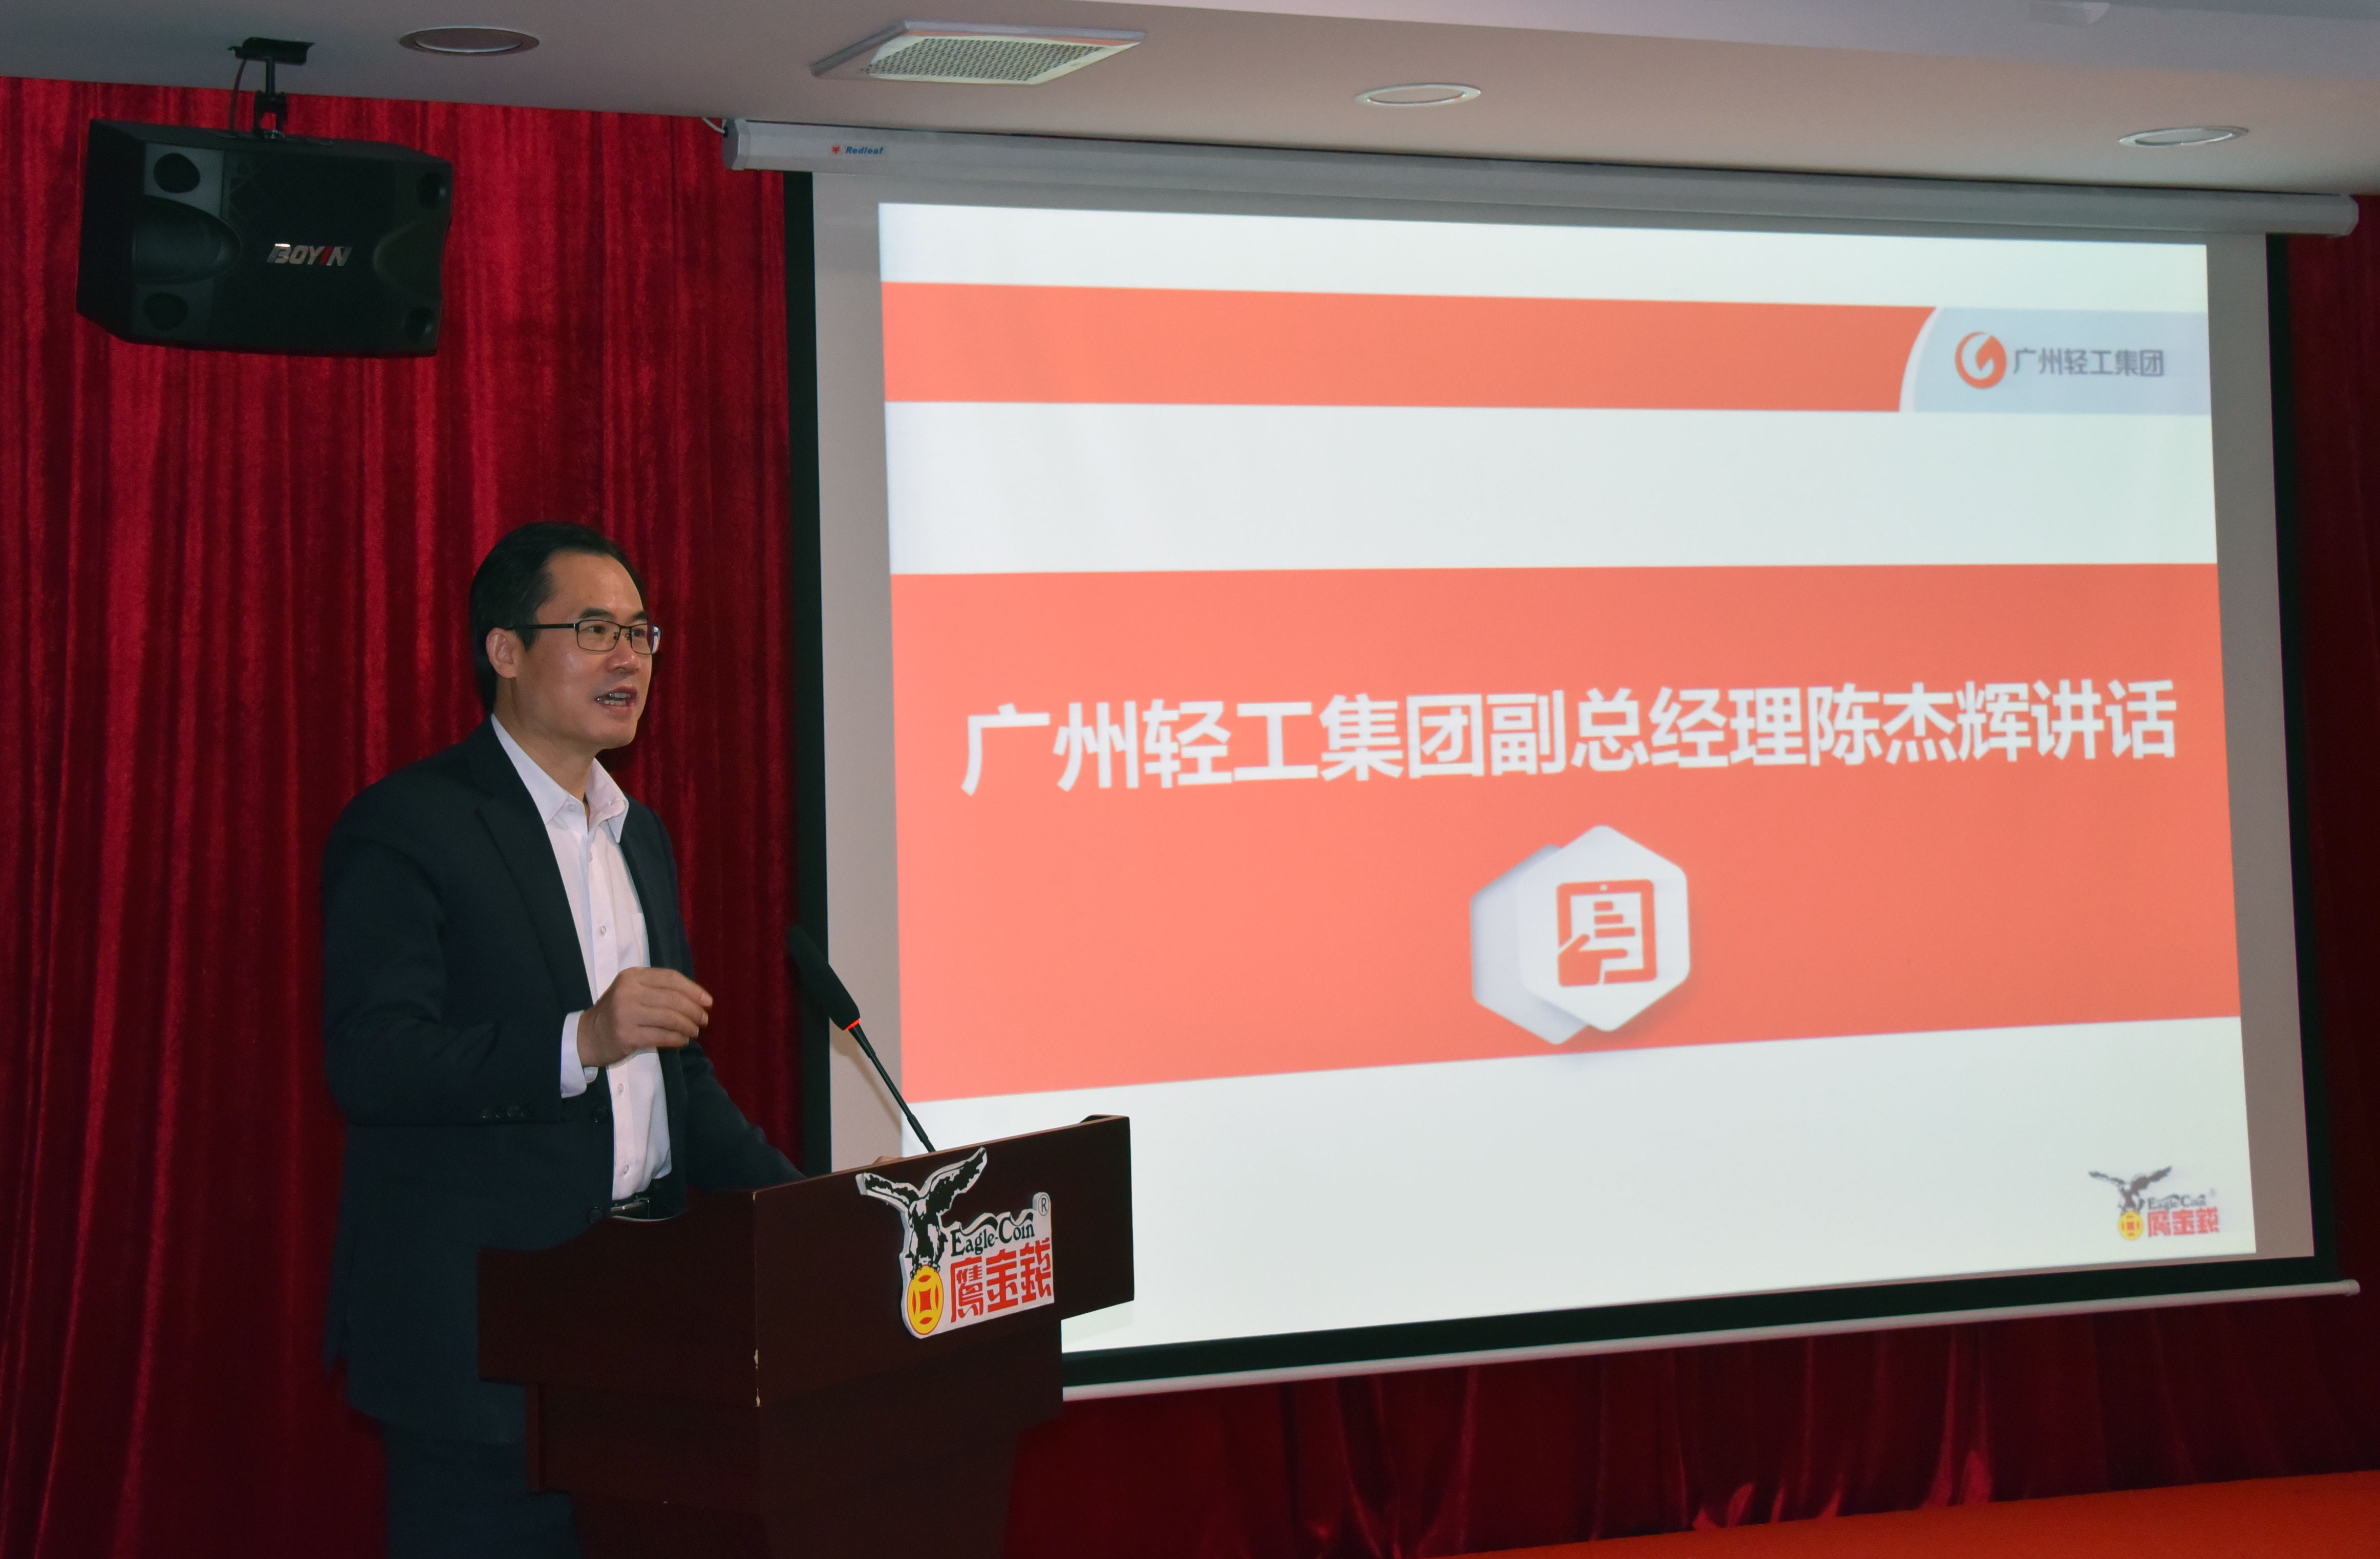 創新賦能、提速發展 ——廣州鷹金錢召開2020-2021年度工作會議